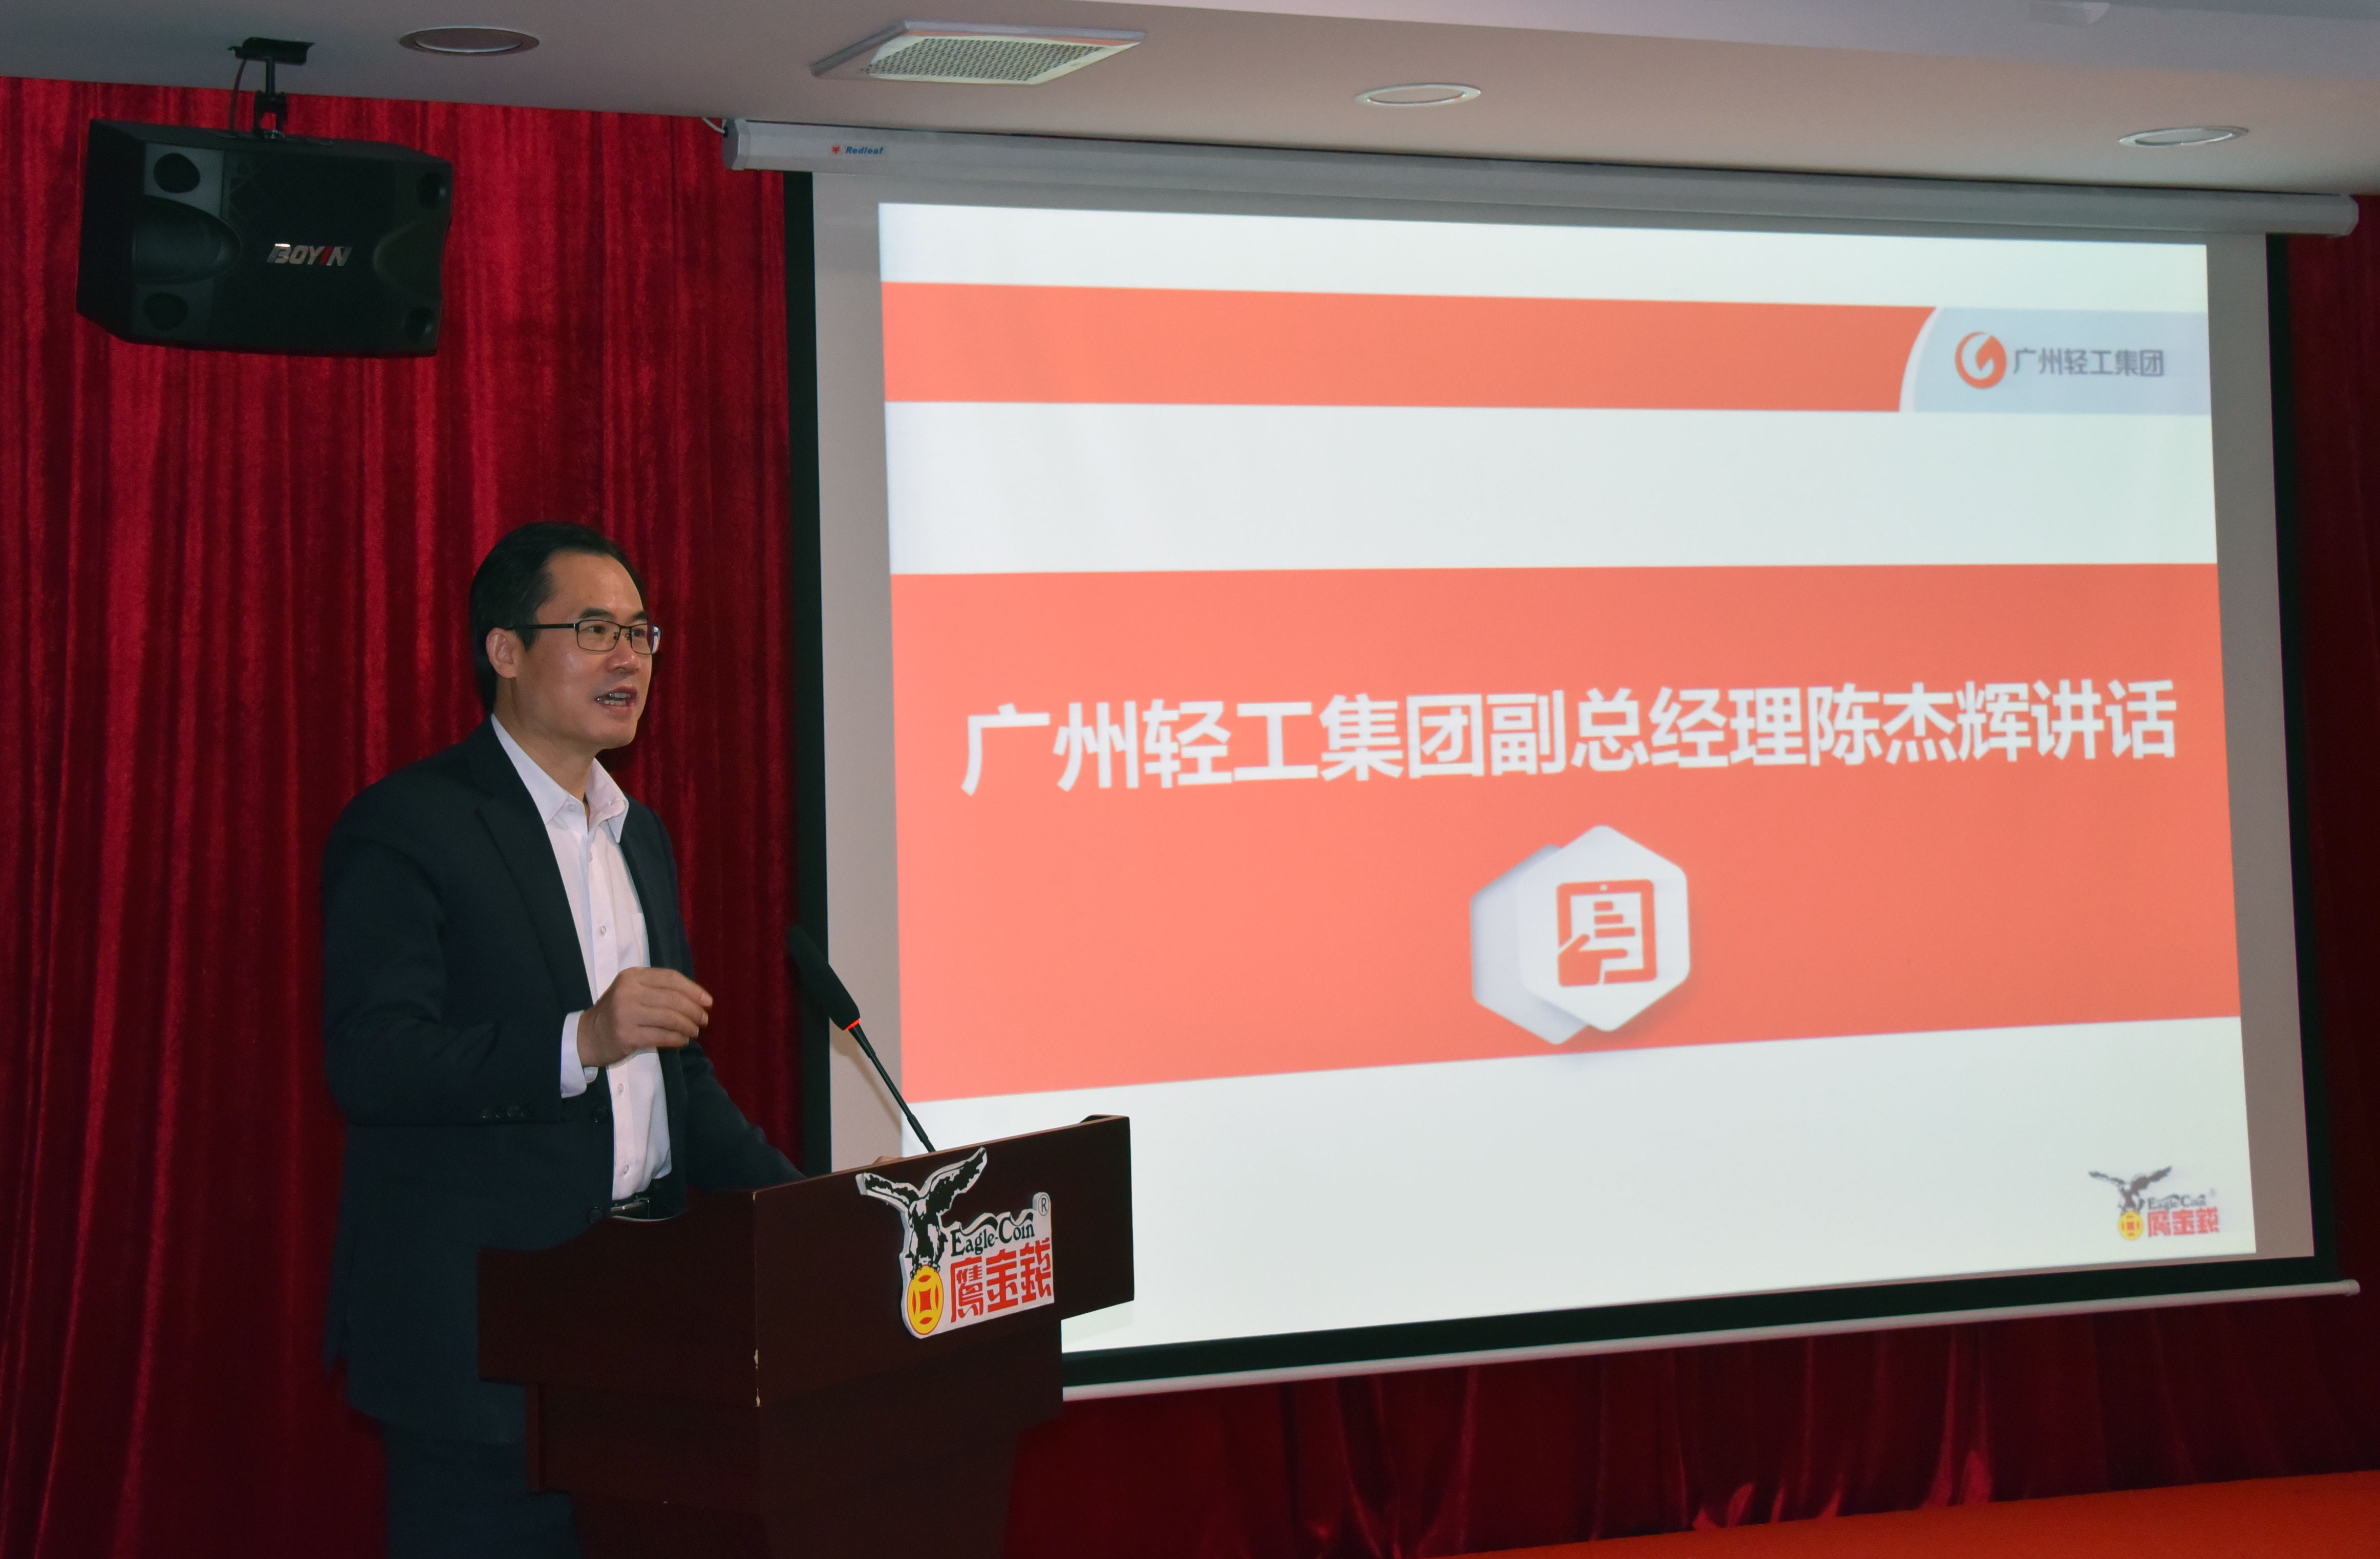 創新賦能、提速發展 ——廣州鷹金錢召開2020-2021年度工作會議